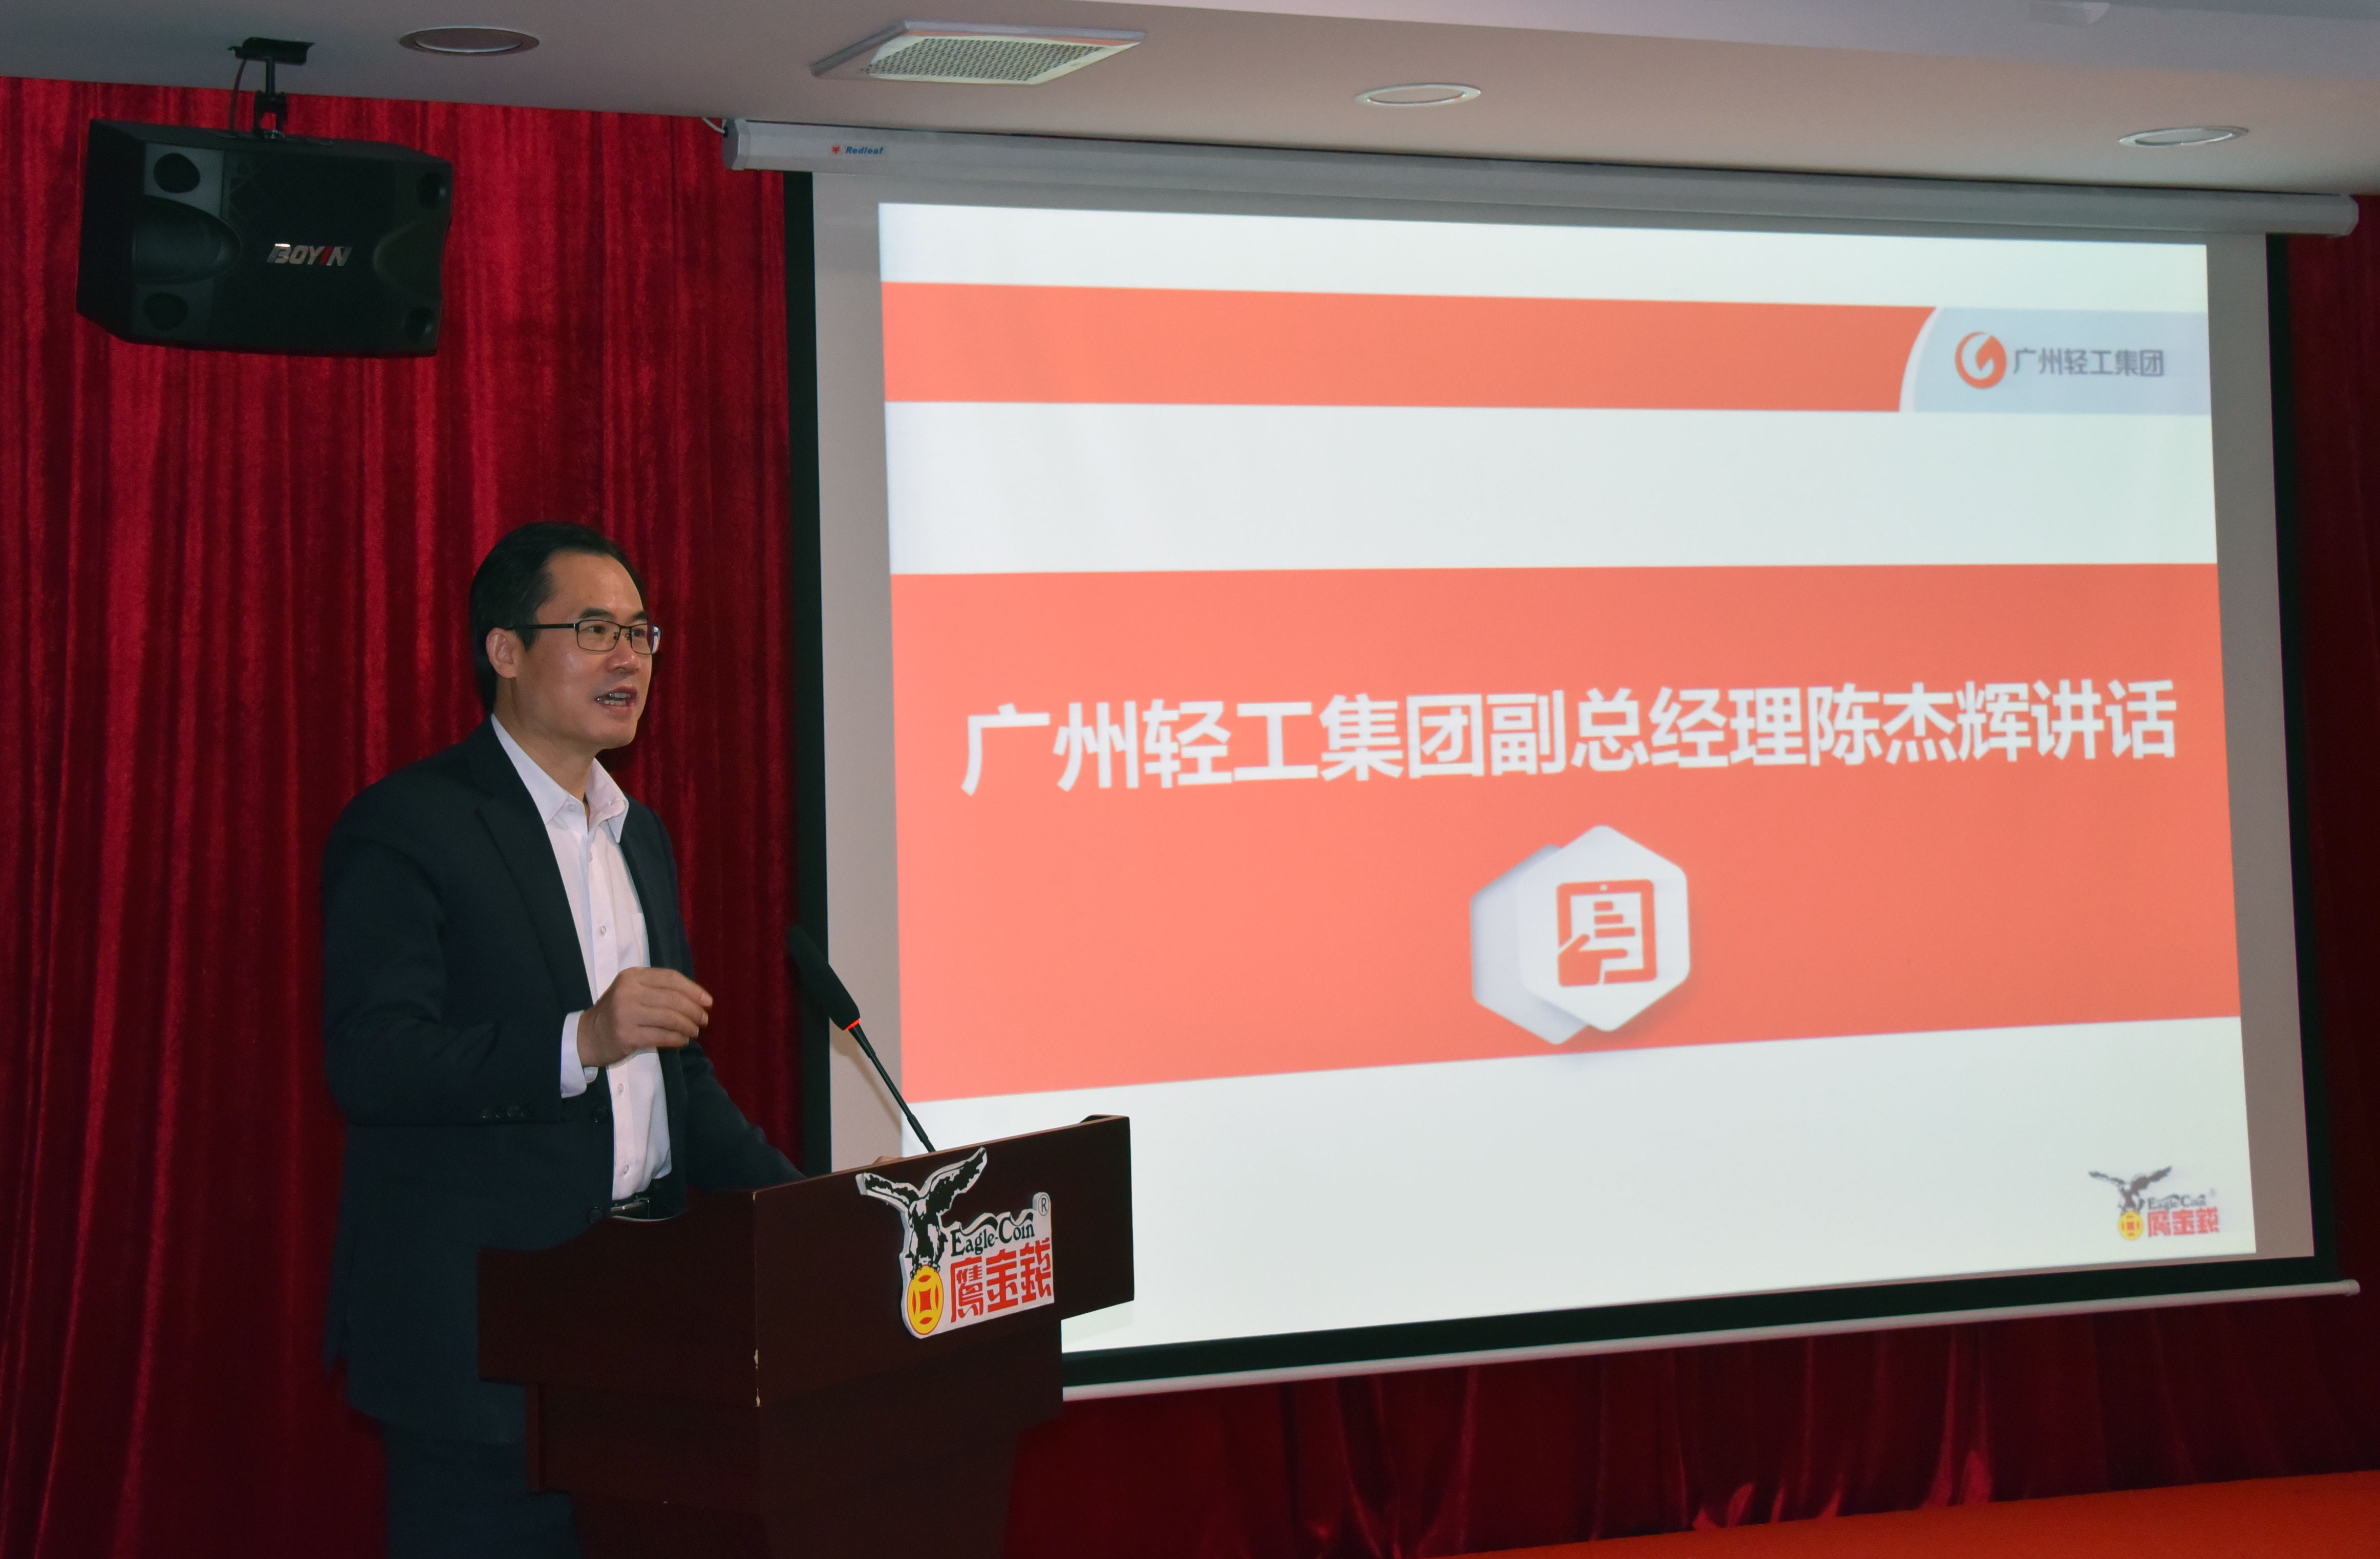 創新賦能、提速發展 ——廣州鷹金錢召開2020-2021年度工作會議